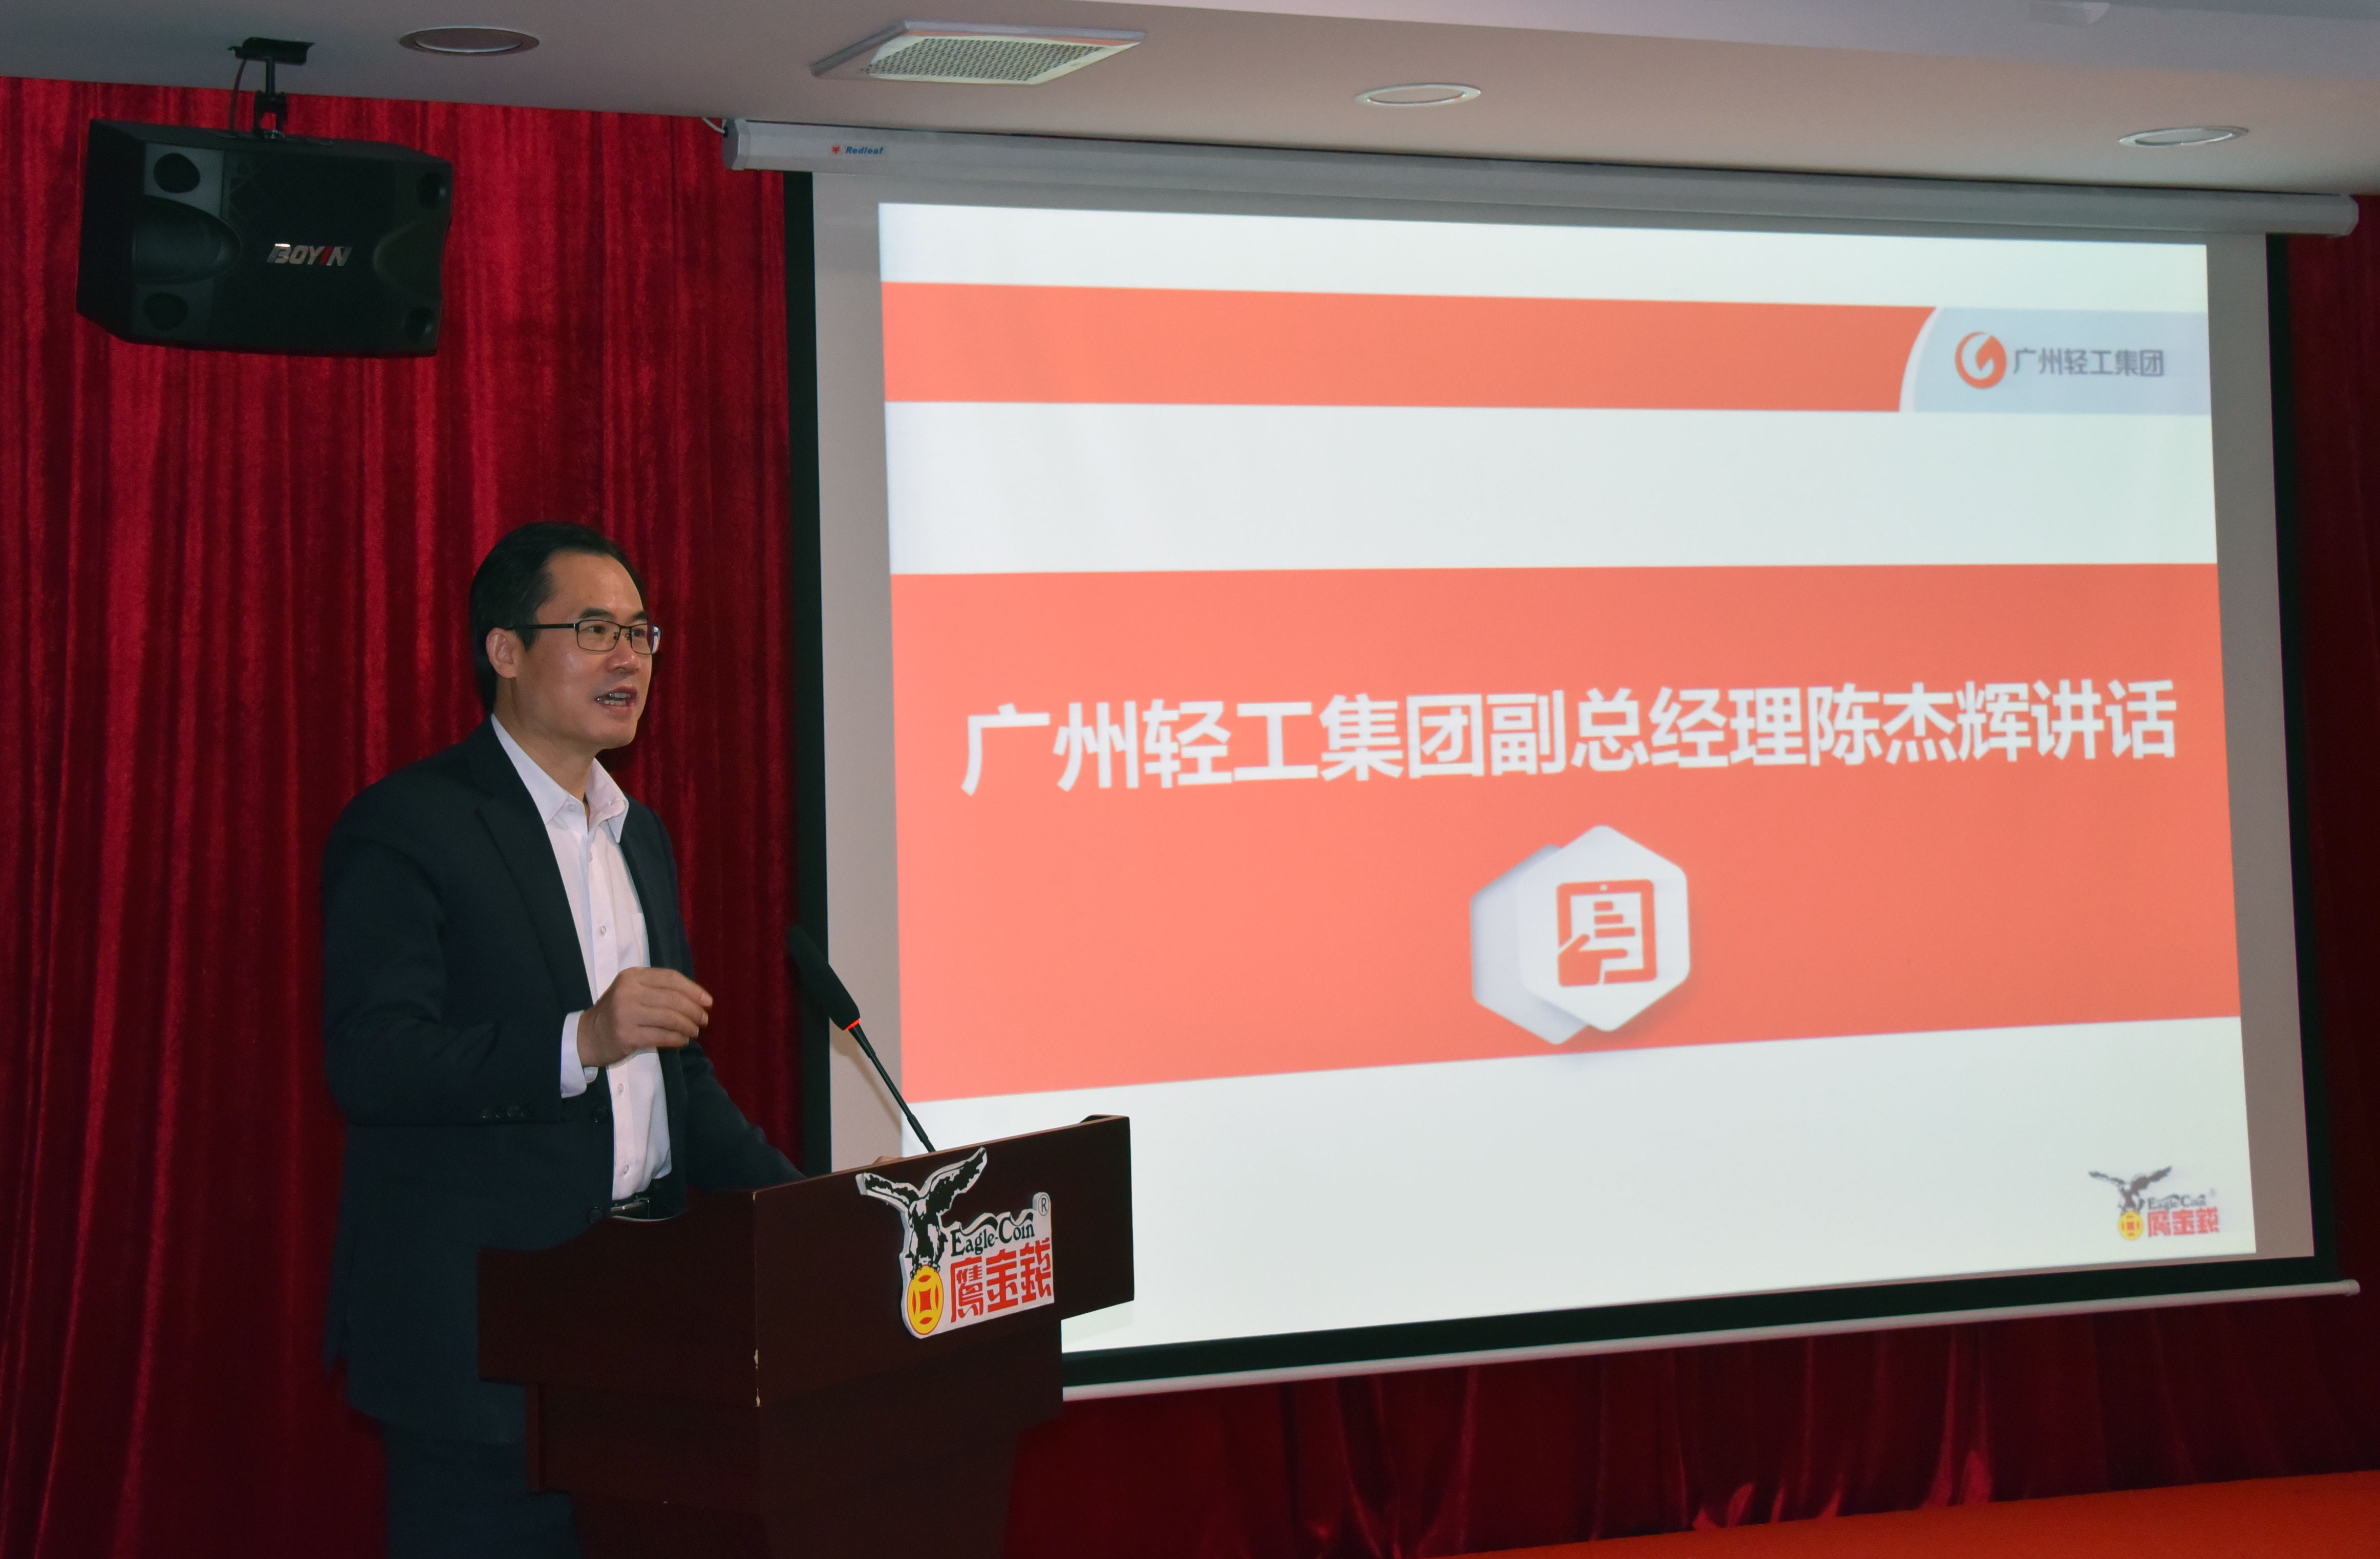 創新賦能、提速發展 ——廣州鷹金錢召開2020-2021年度工作會議